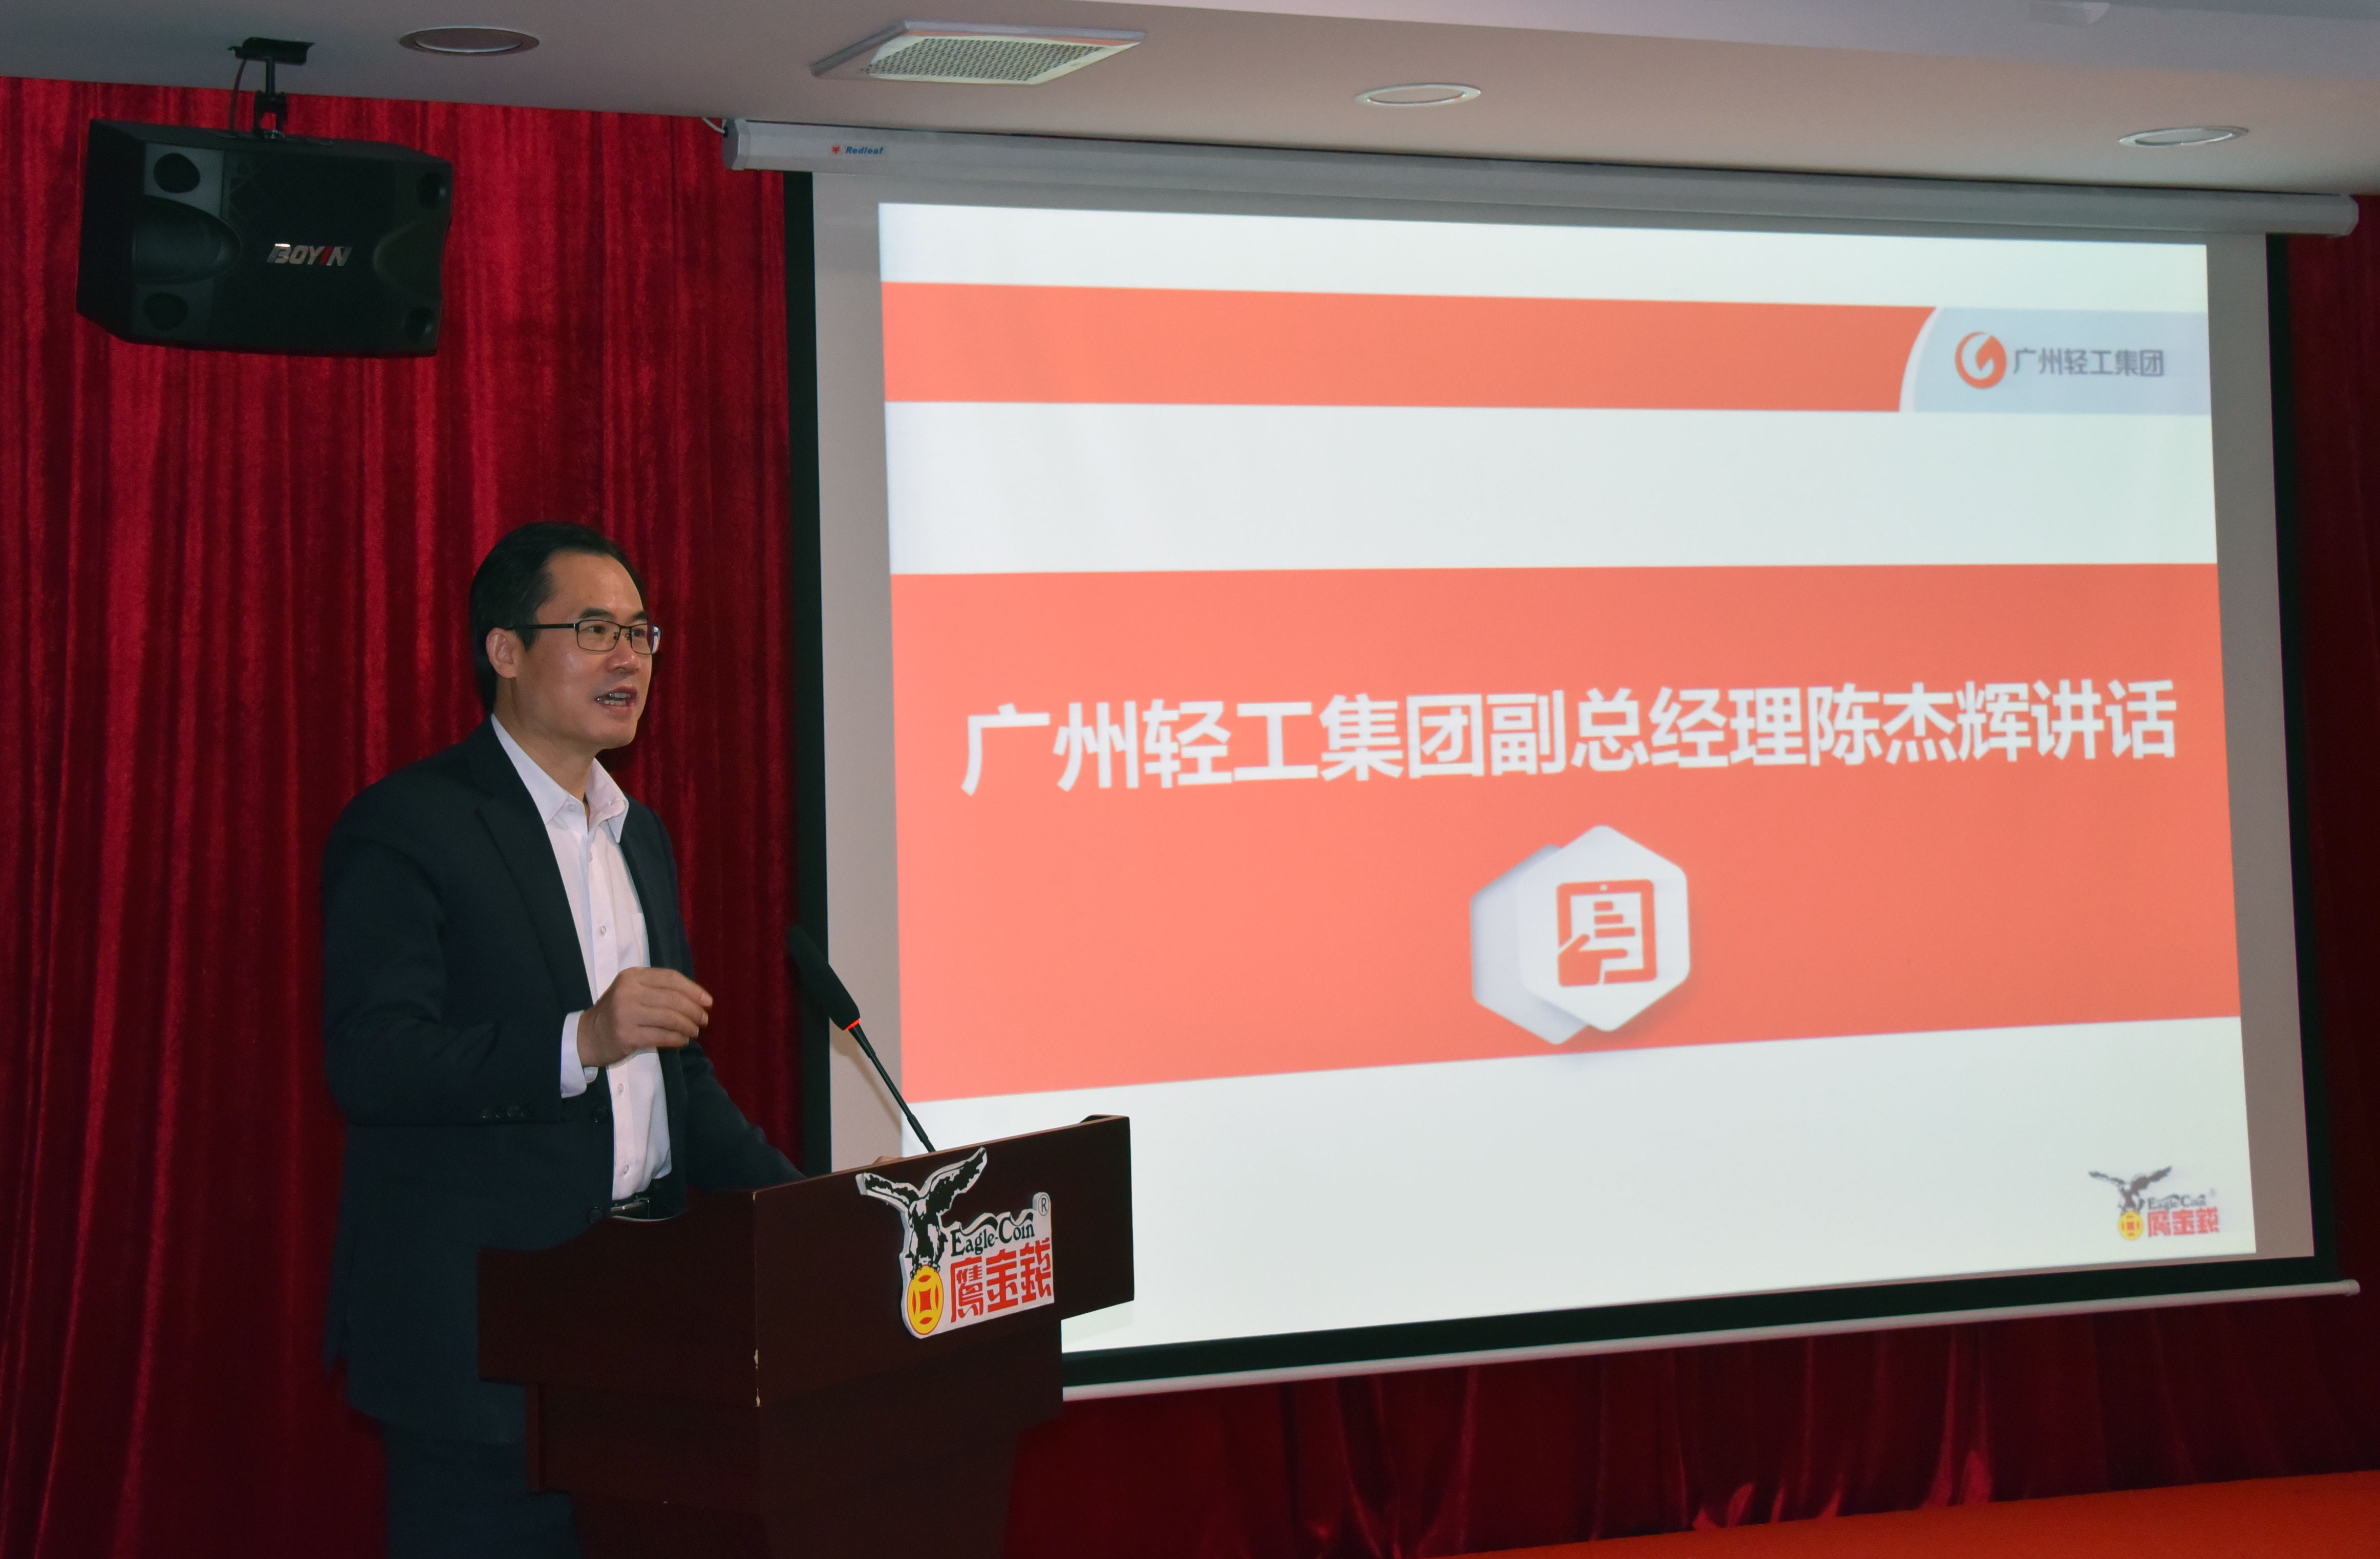 創新賦能、提速發展 ——廣州鷹金錢召開2020-2021年度工作會議